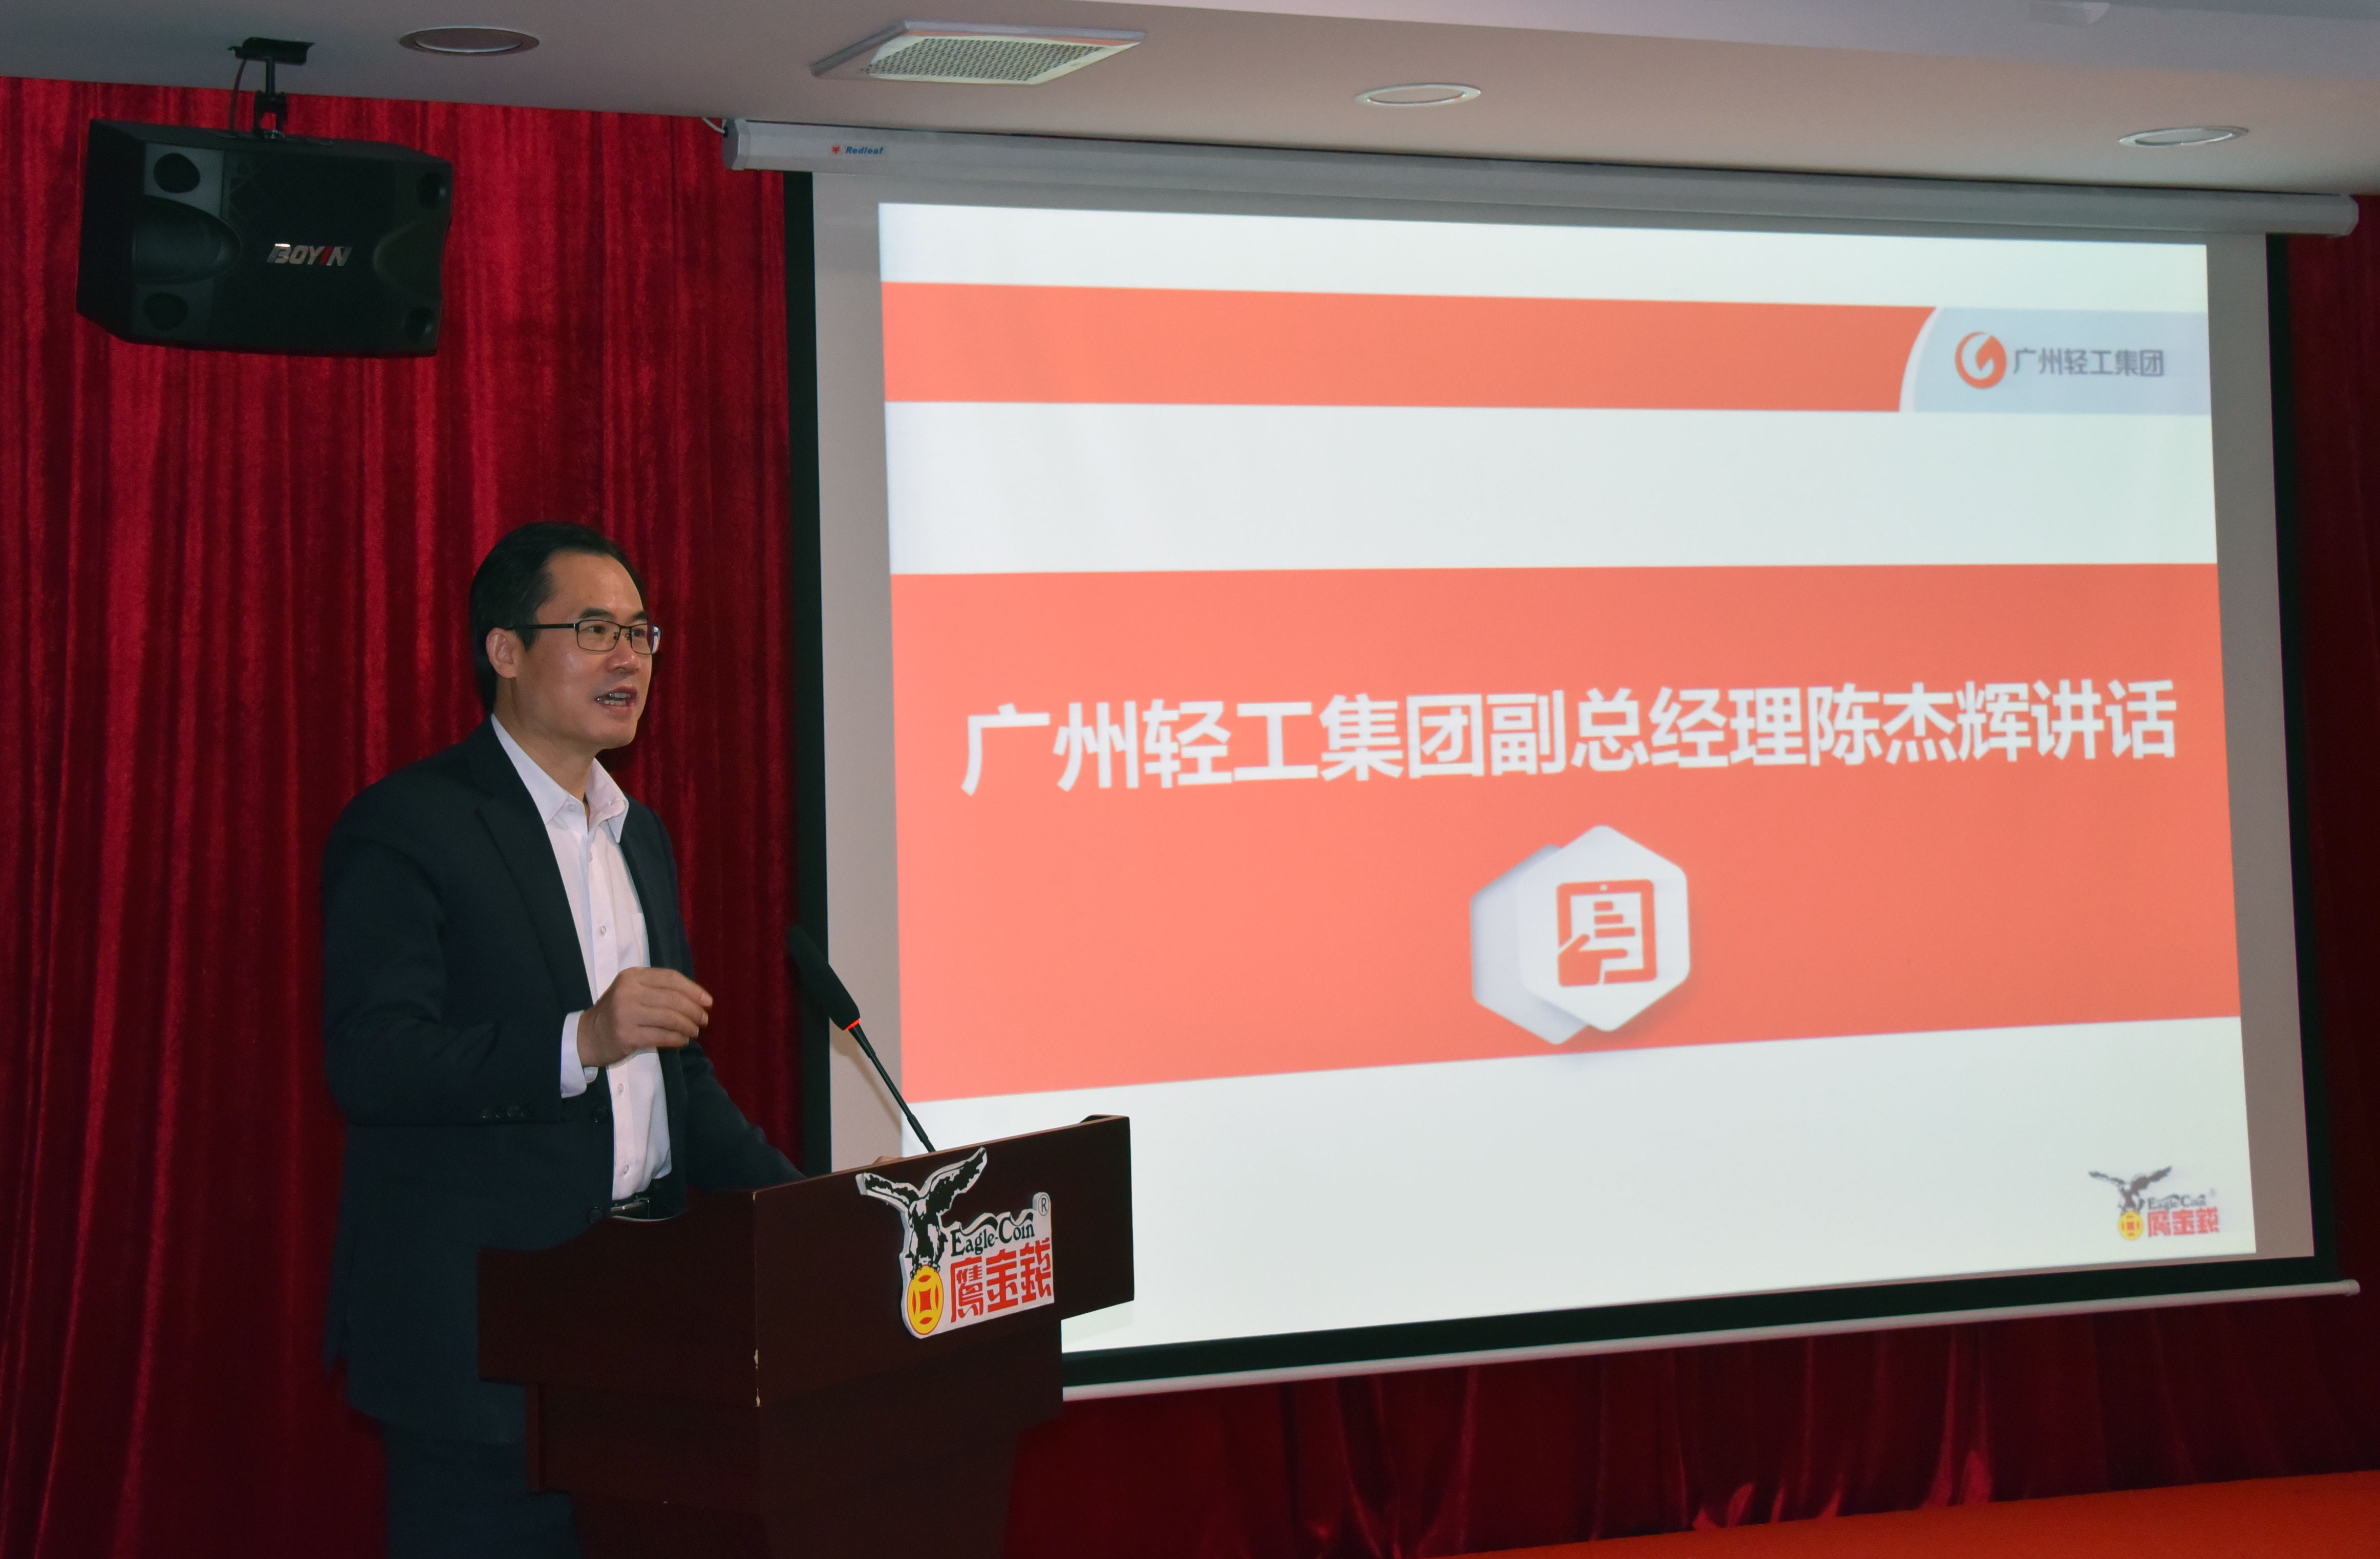 創新賦能、提速發展 ——廣州鷹金錢召開2020-2021年度工作會議